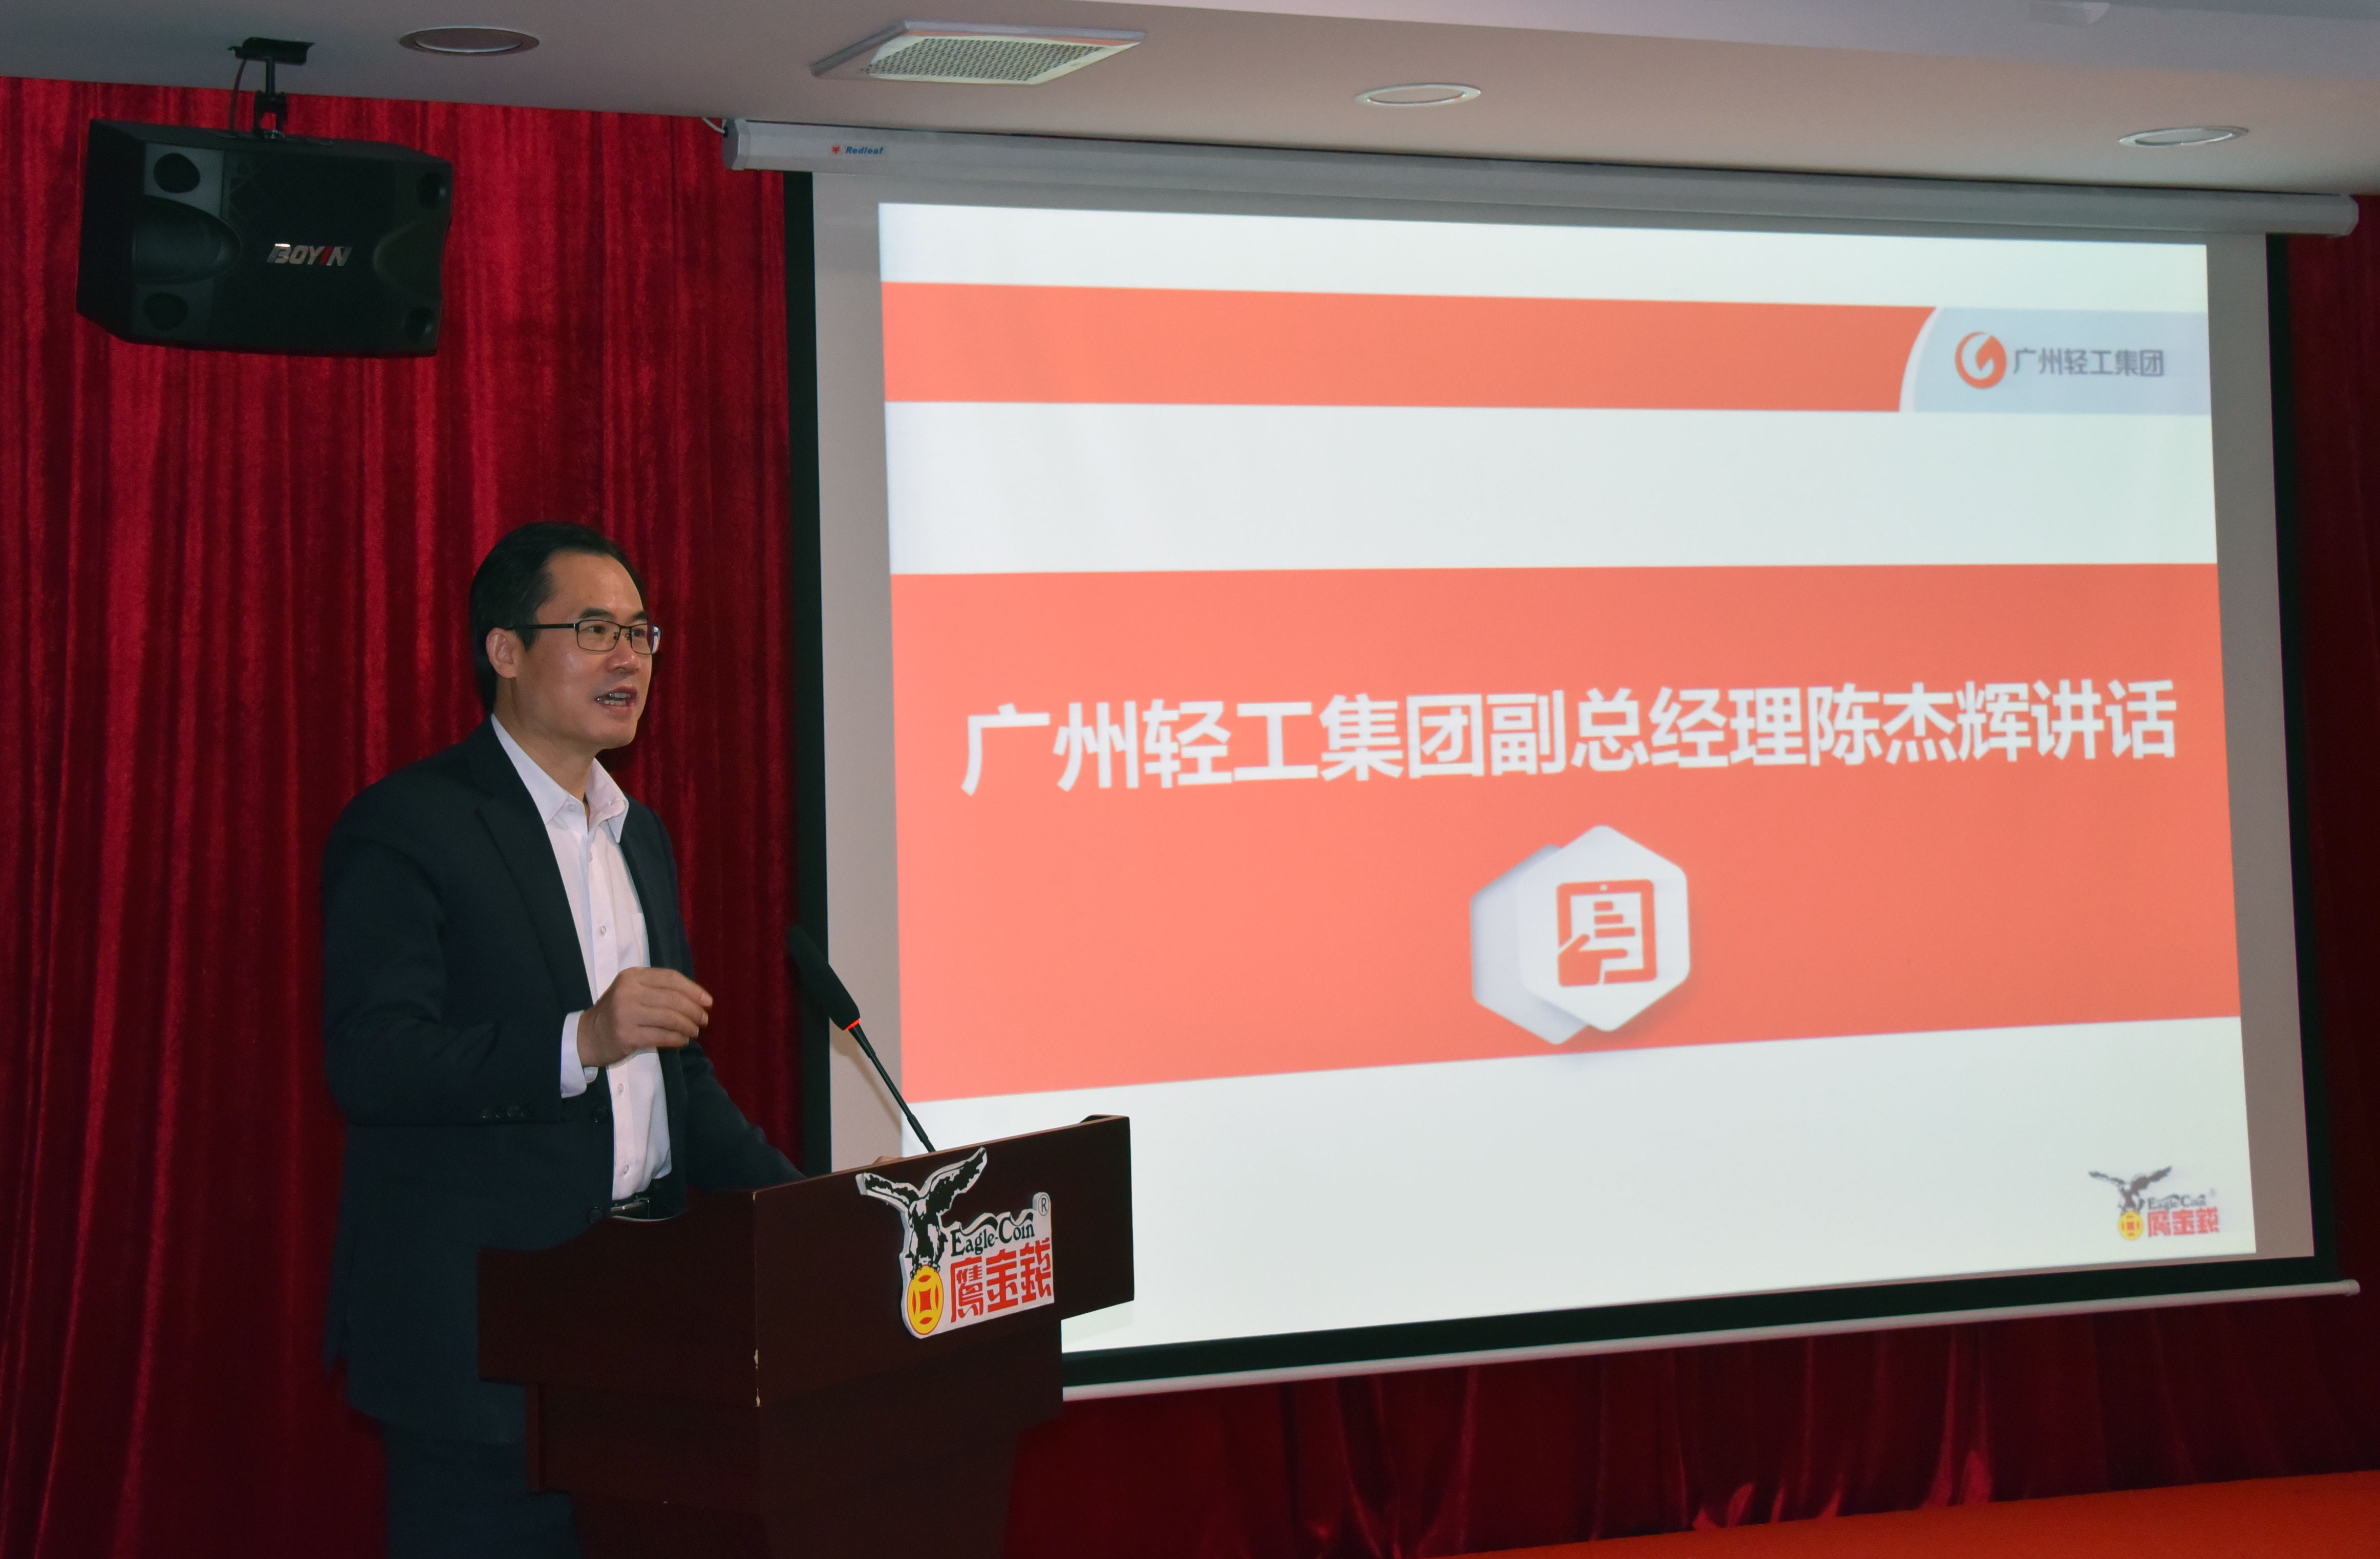 創新賦能、提速發展 ——廣州鷹金錢召開2020-2021年度工作會議